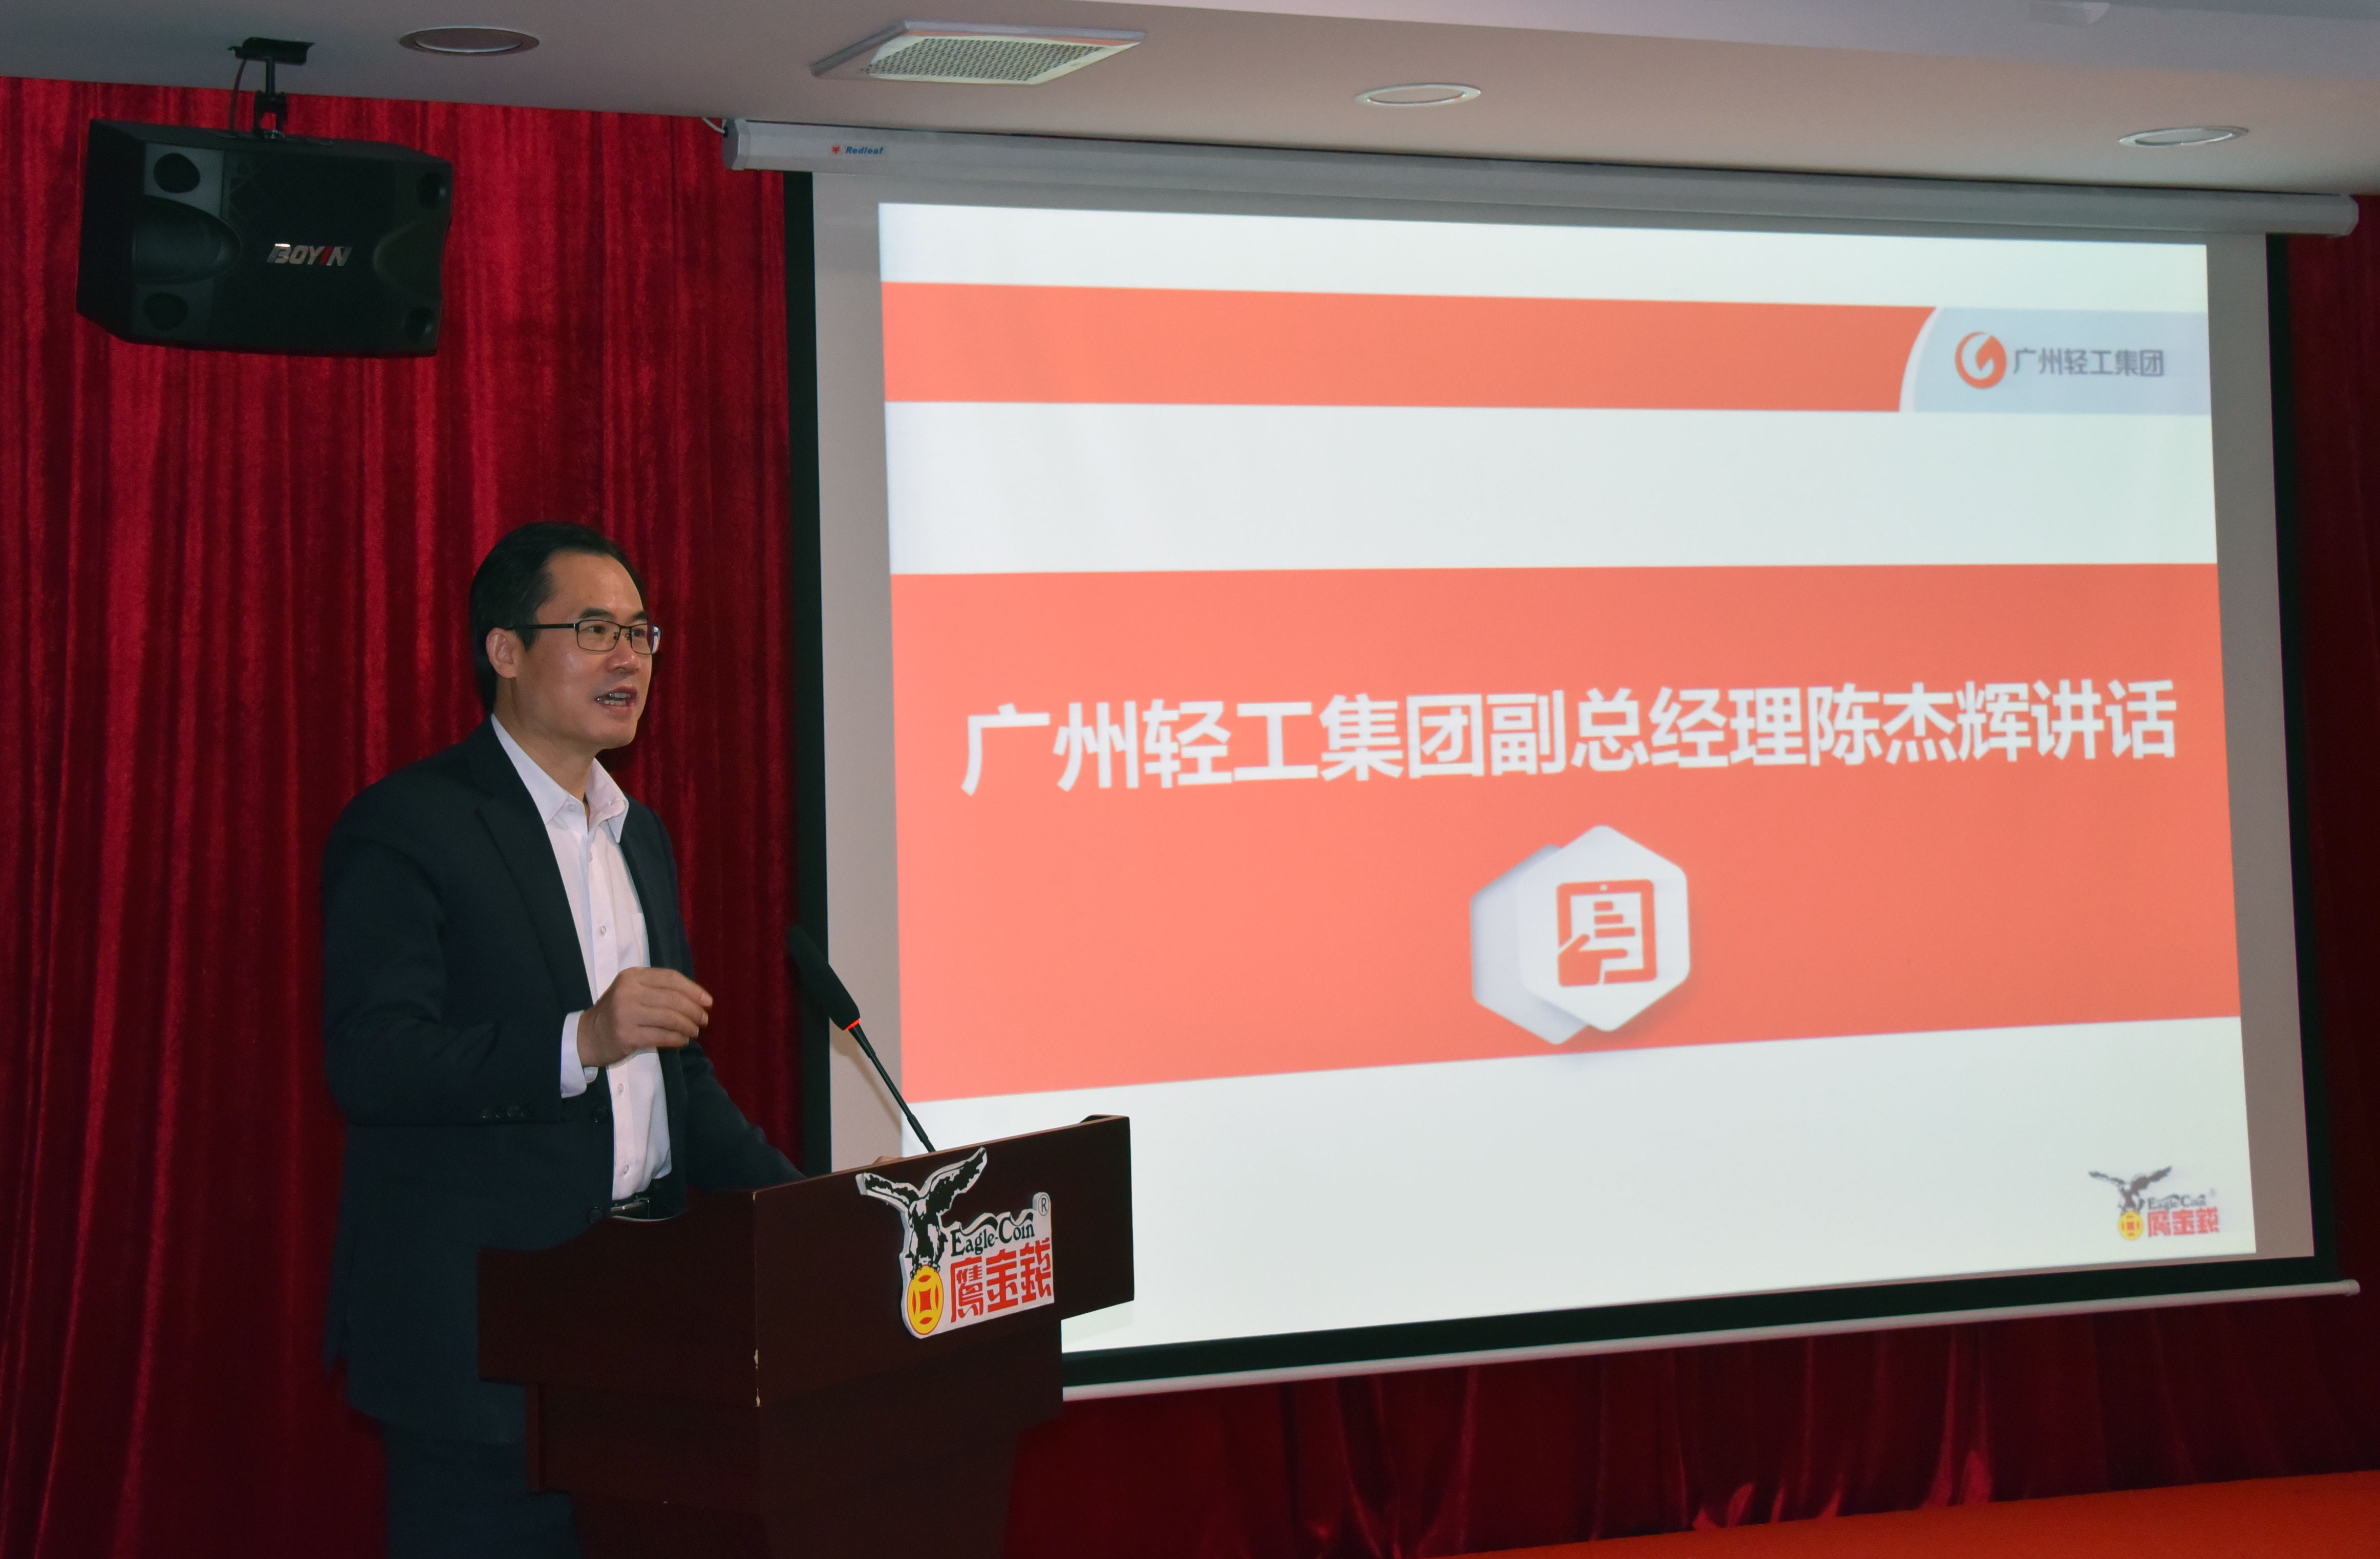 創新賦能、提速發展 ——廣州鷹金錢召開2020-2021年度工作會議